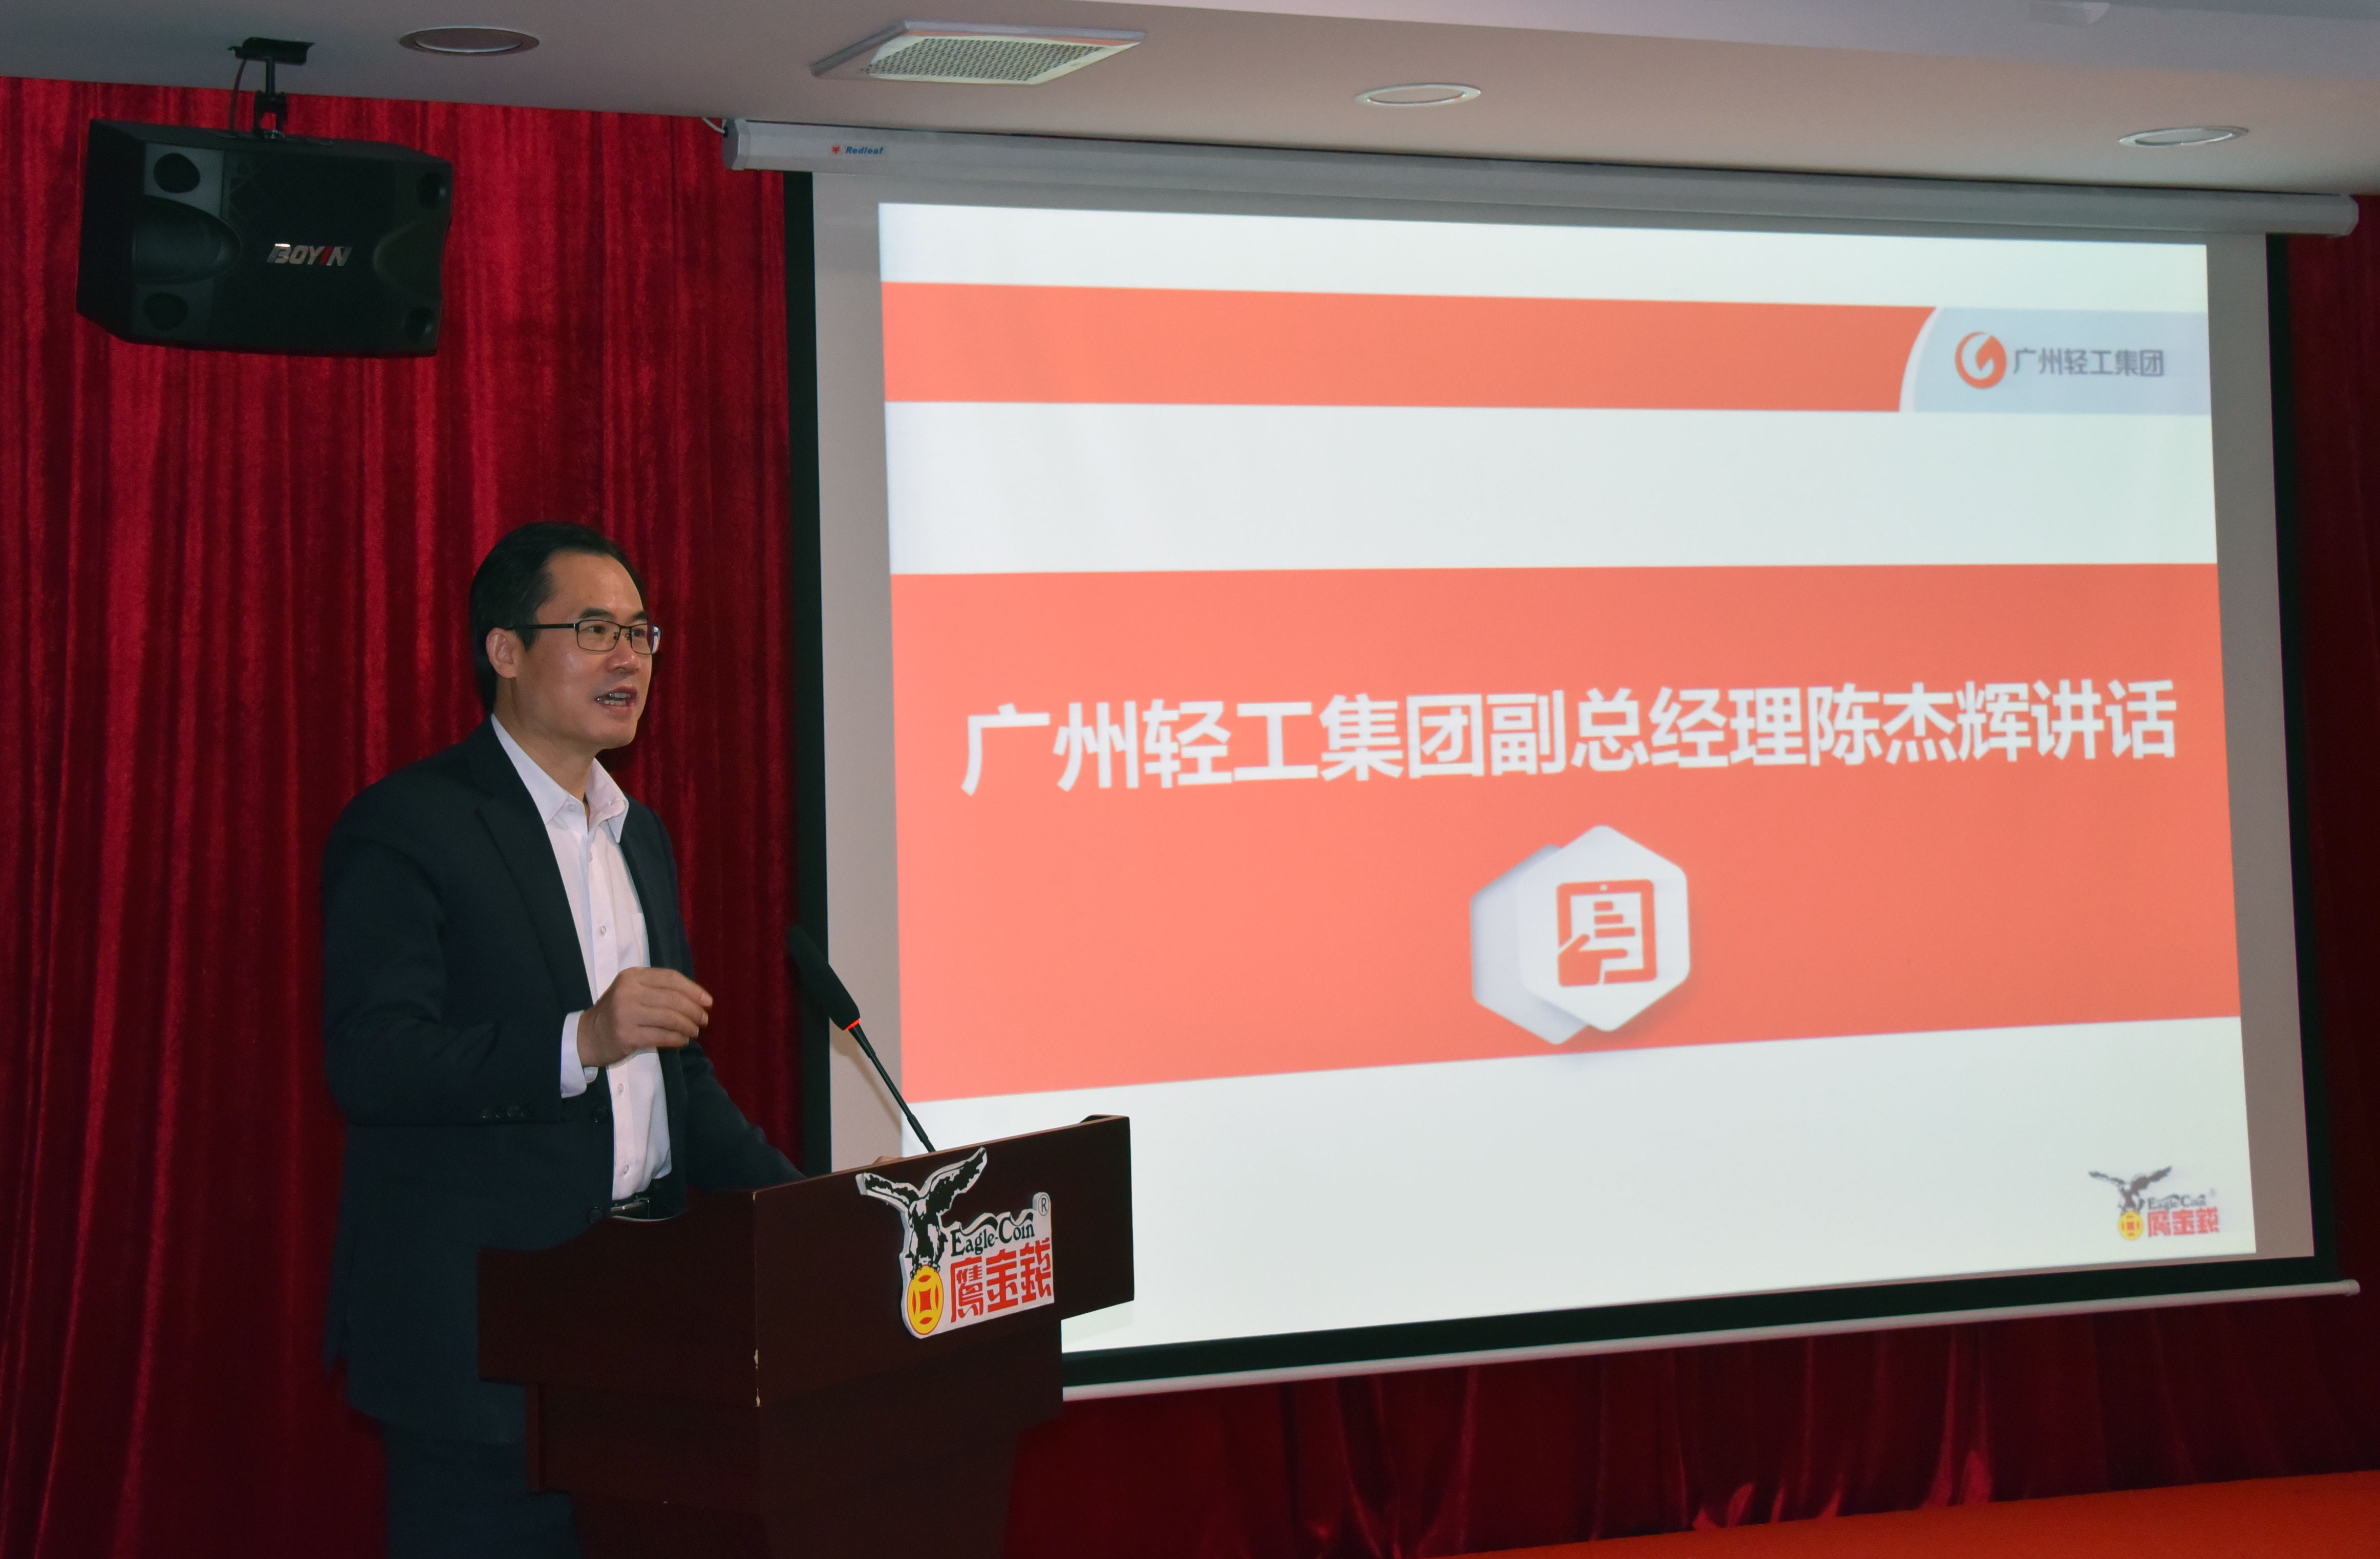 創新賦能、提速發展 ——廣州鷹金錢召開2020-2021年度工作會議